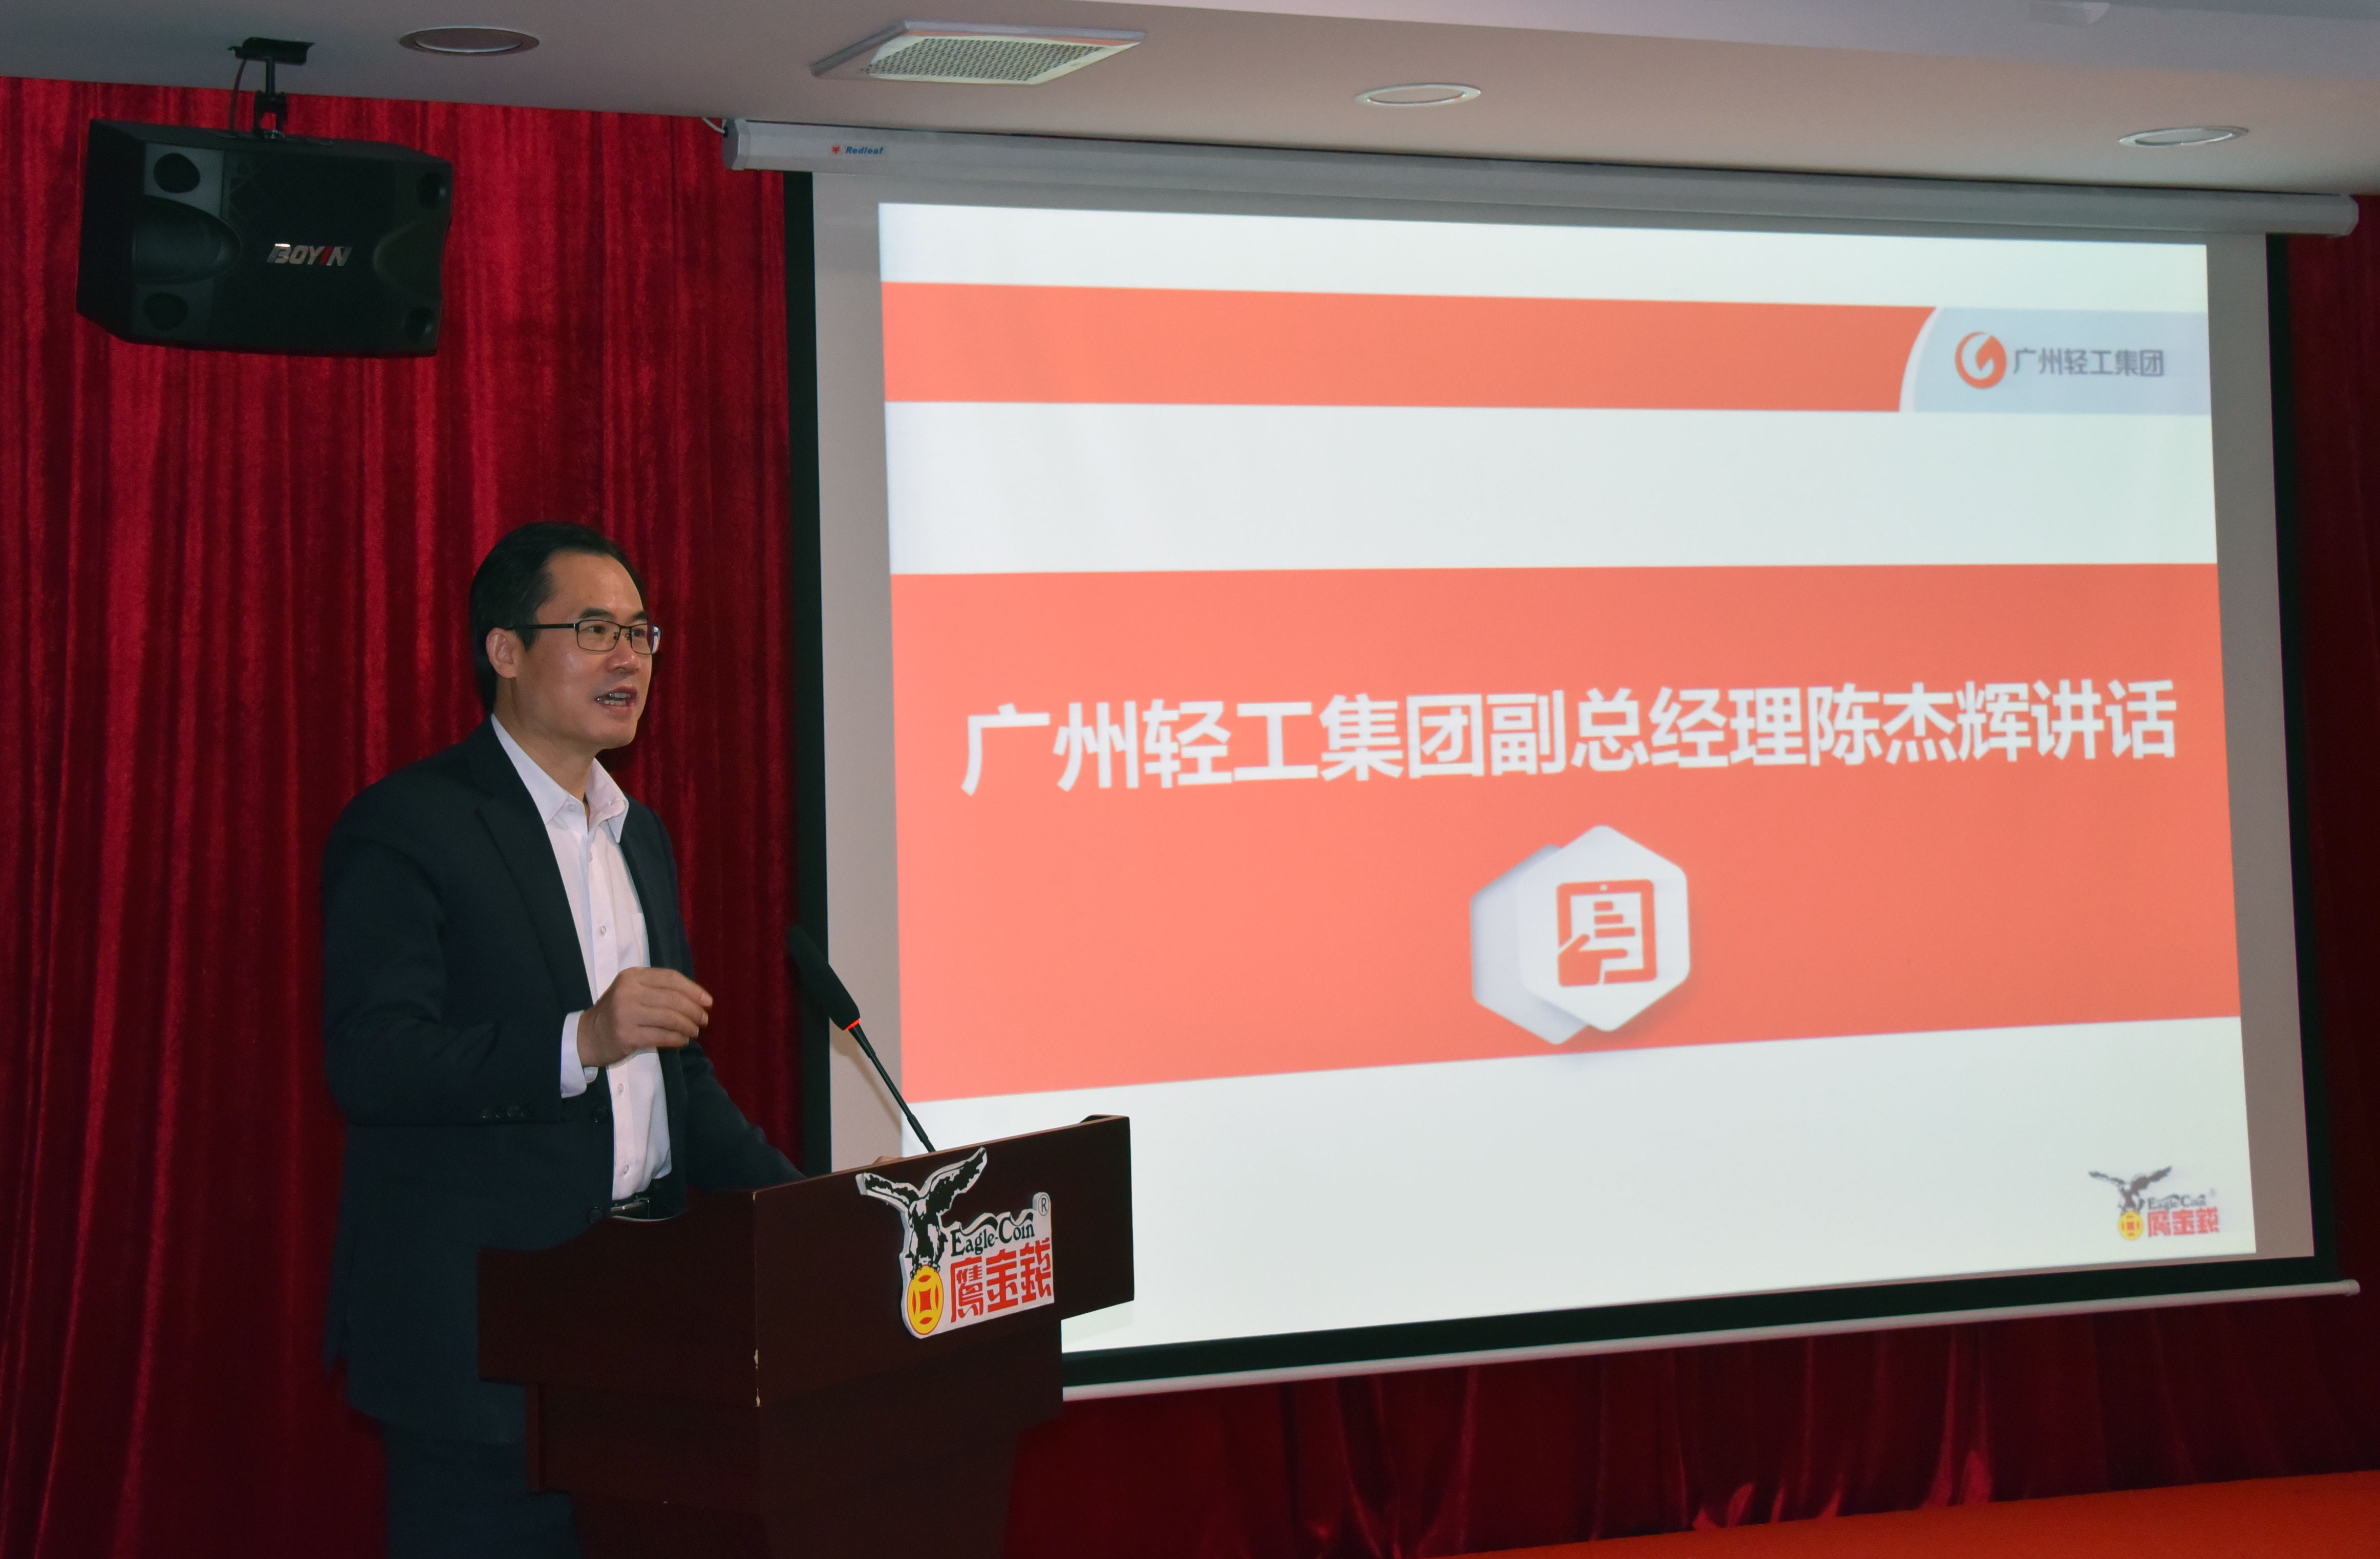 創新賦能、提速發展 ——廣州鷹金錢召開2020-2021年度工作會議